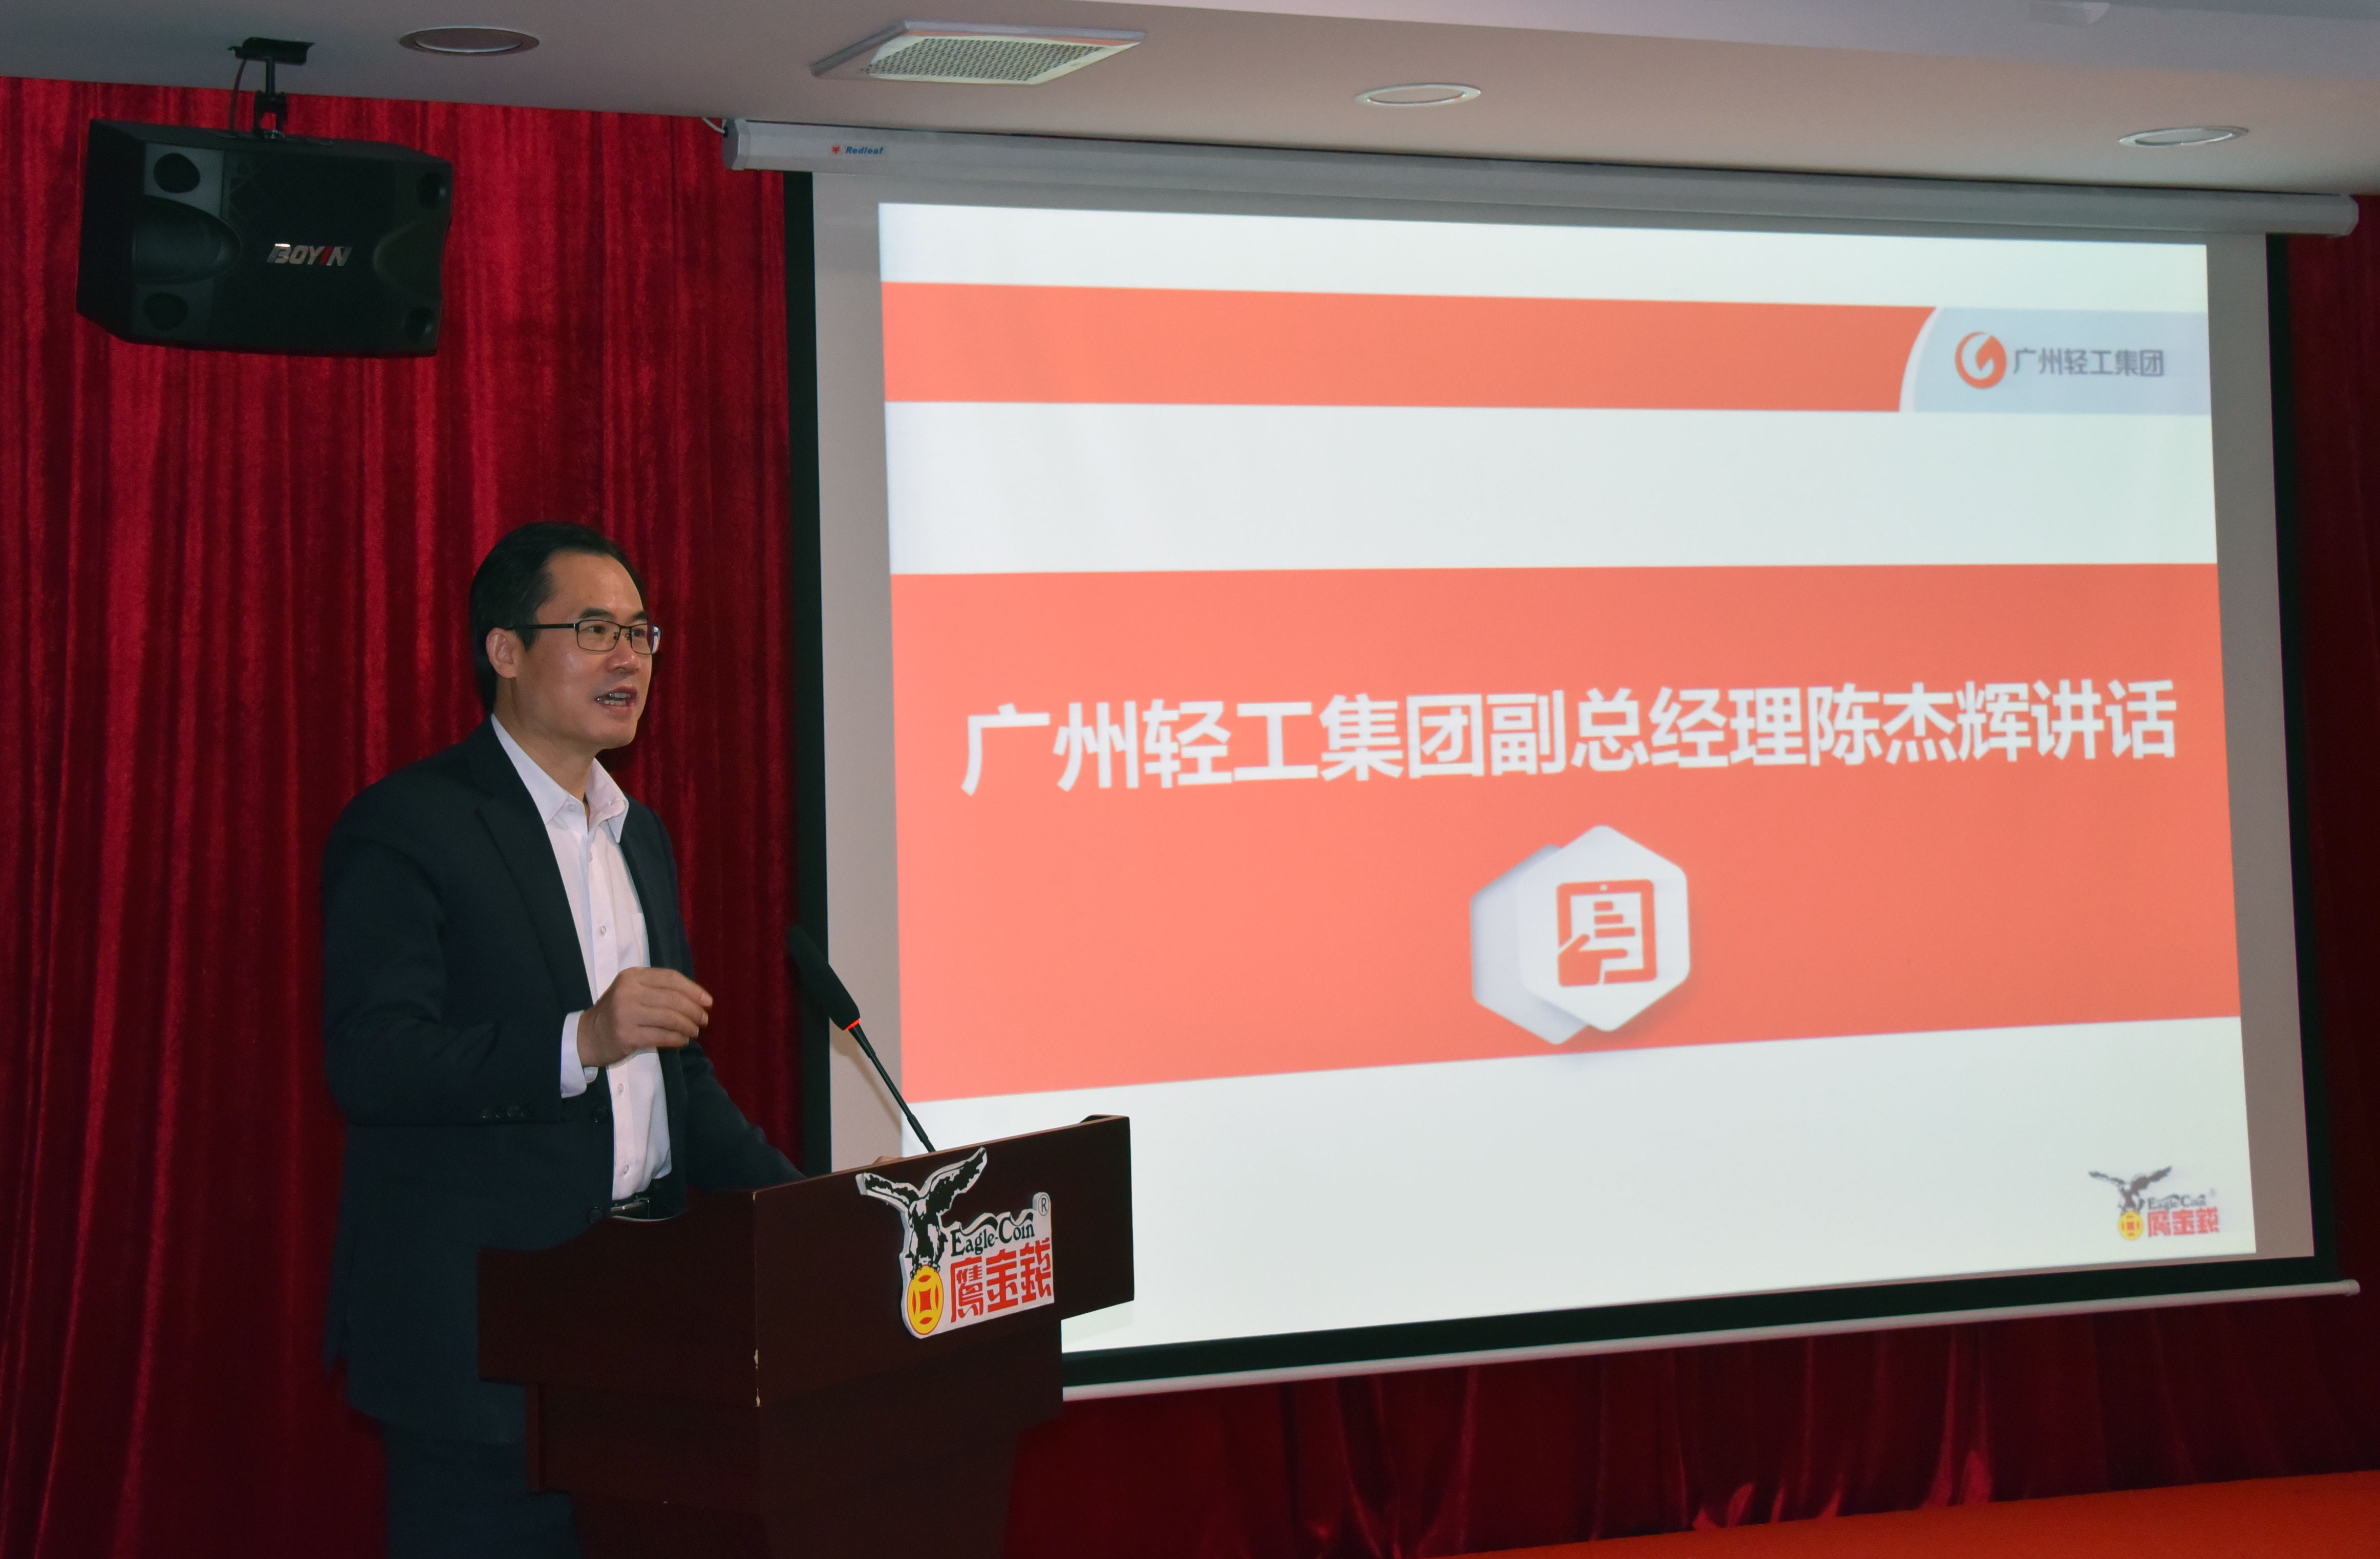 創新賦能、提速發展 ——廣州鷹金錢召開2020-2021年度工作會議